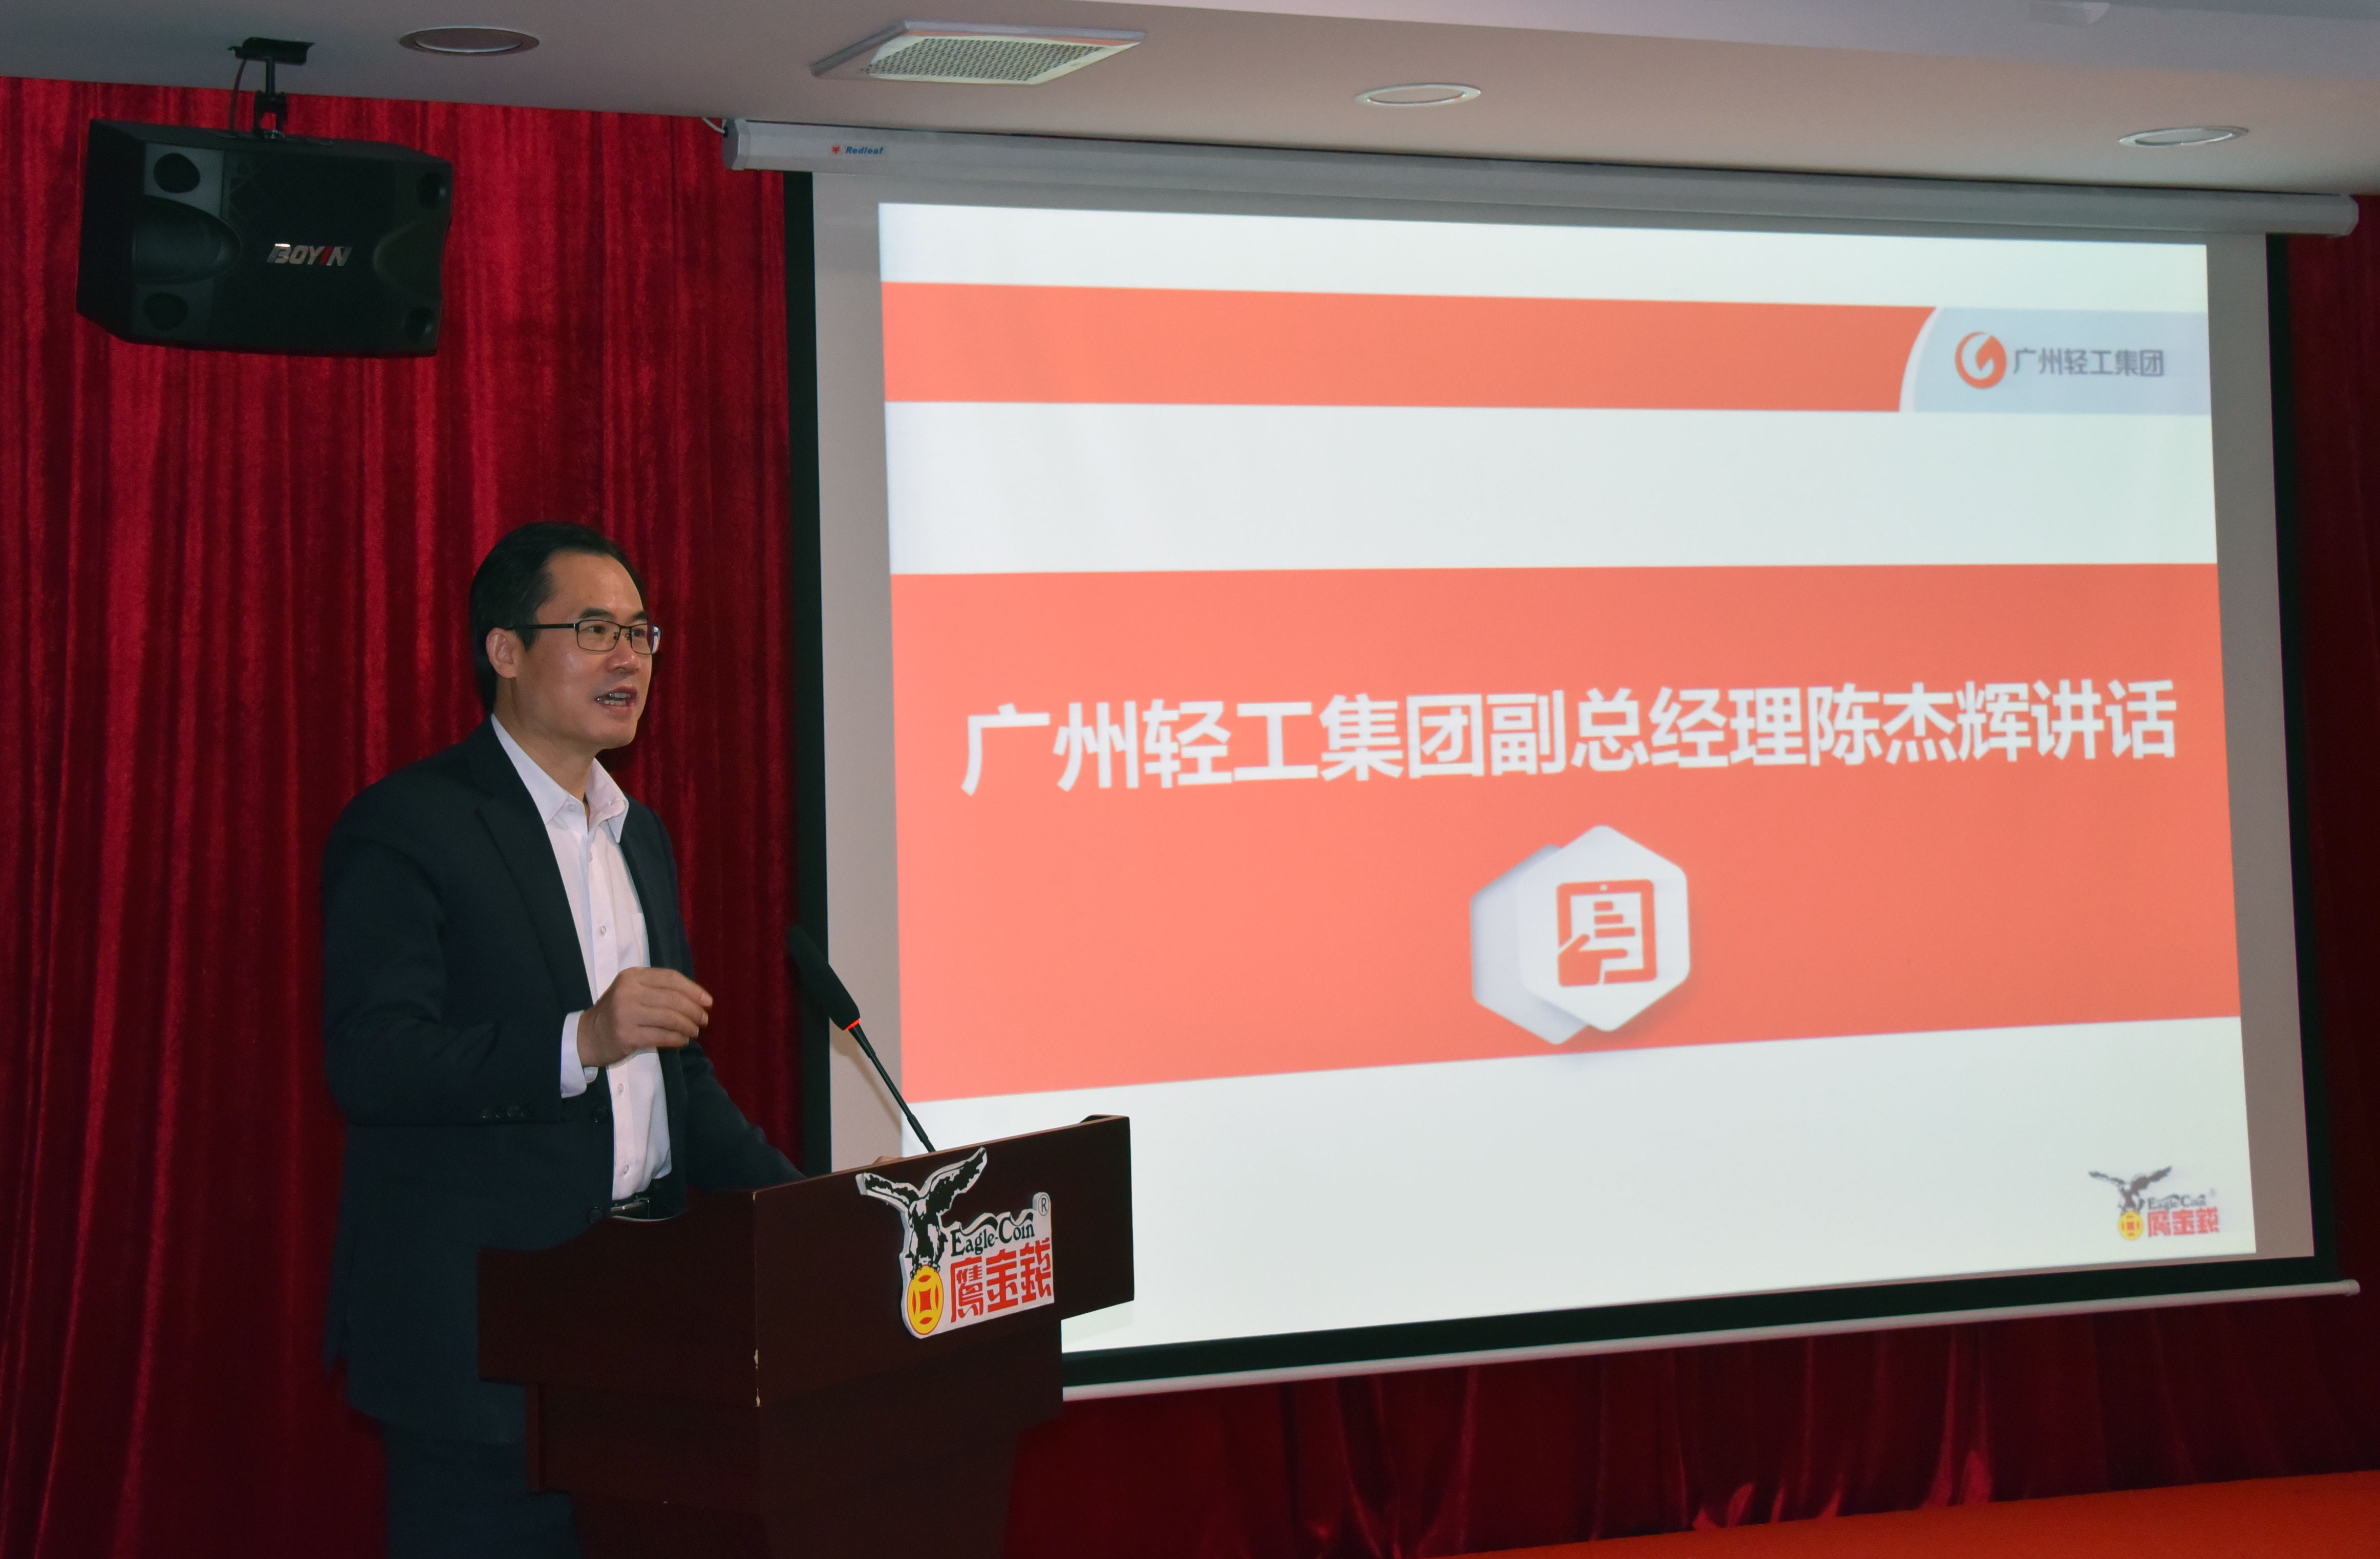 創新賦能、提速發展 ——廣州鷹金錢召開2020-2021年度工作會議